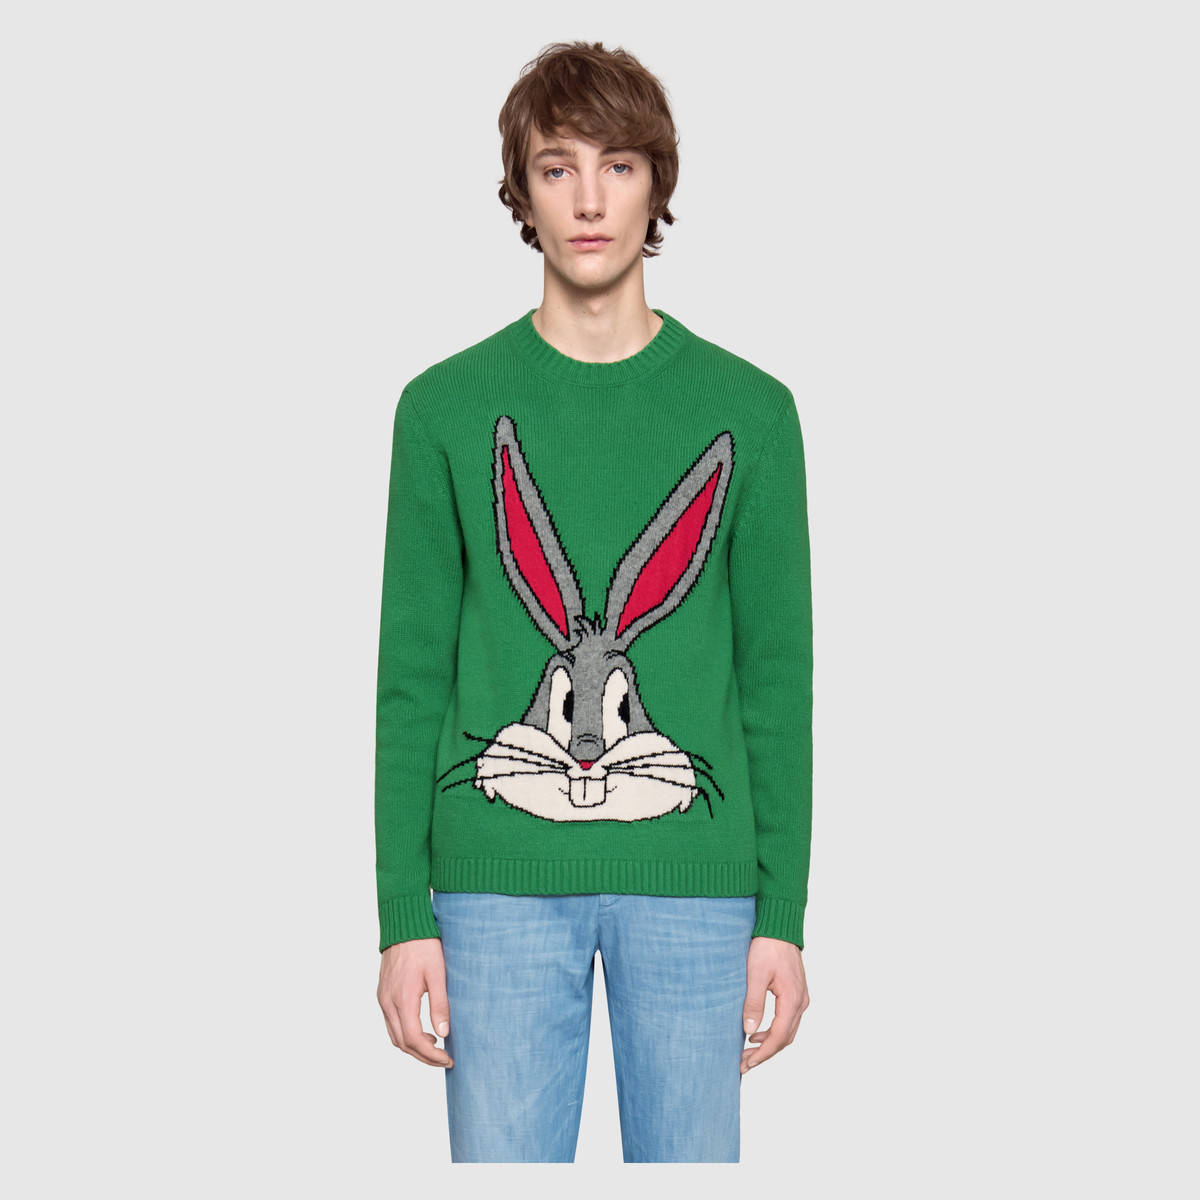 gucci bunny sweatshirt